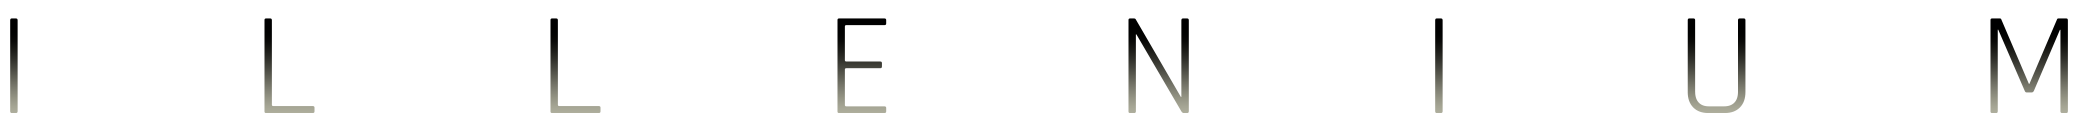 Illenium Staging mobile logo